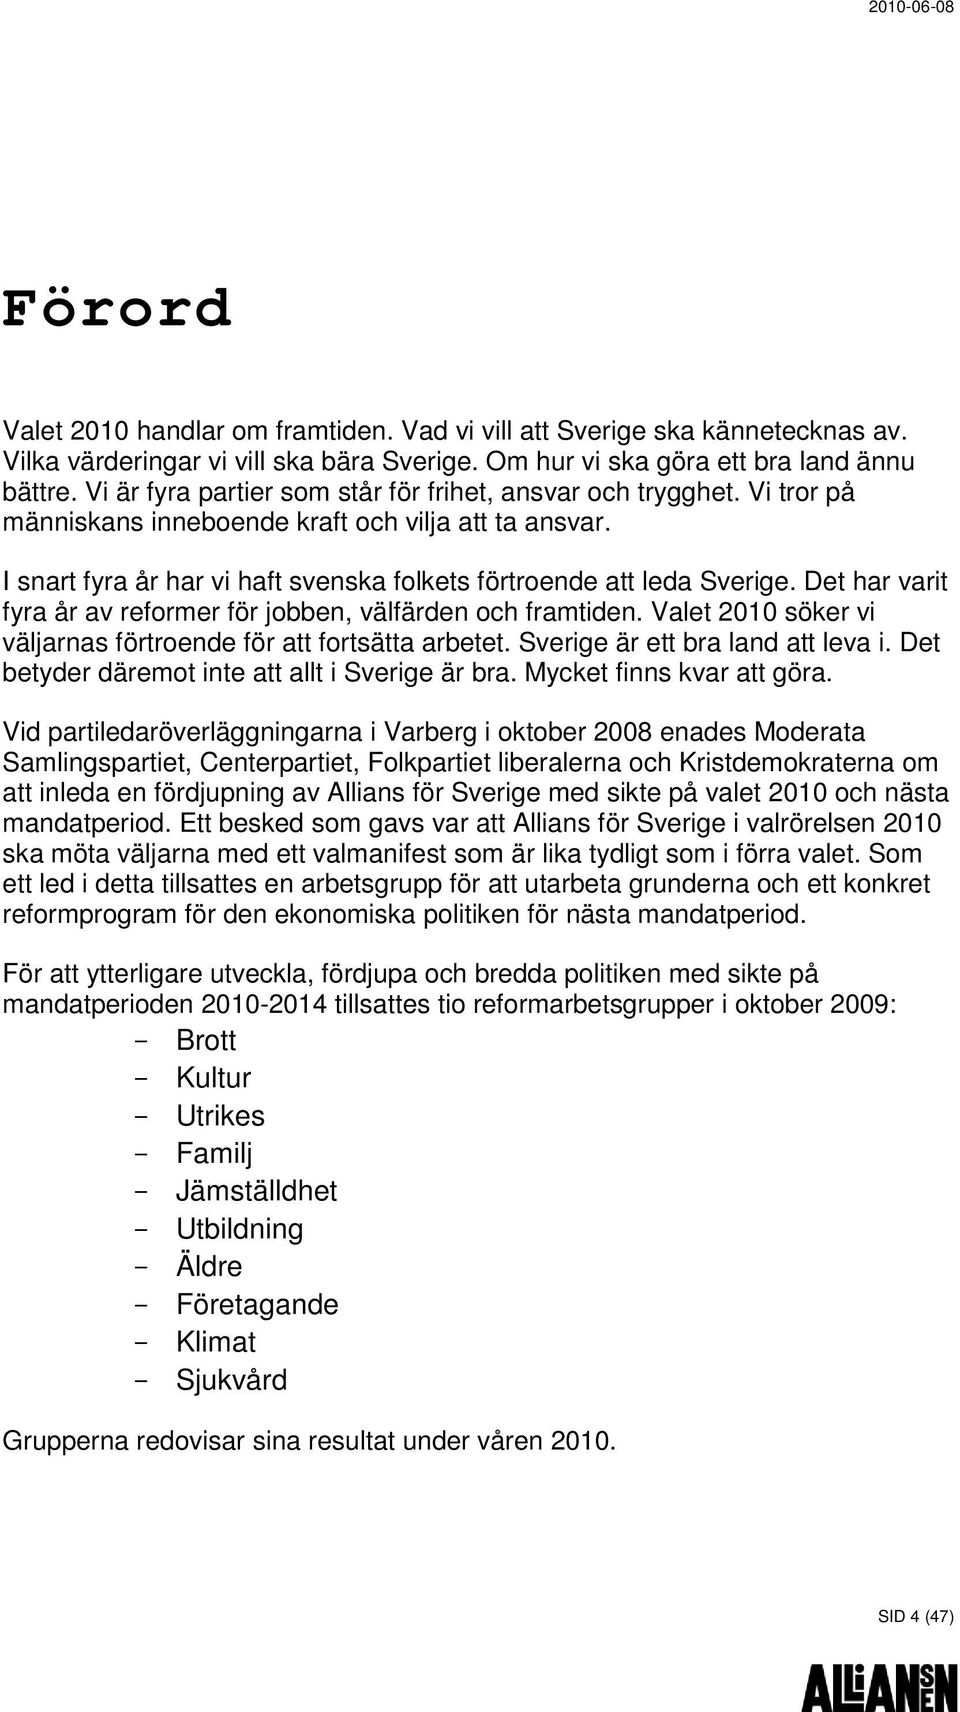 Det har varit fyra år av reformer för jobben, välfärden och framtiden. Valet 2010 söker vi väljarnas förtroende för att fortsätta arbetet. Sverige är ett bra land att leva i.